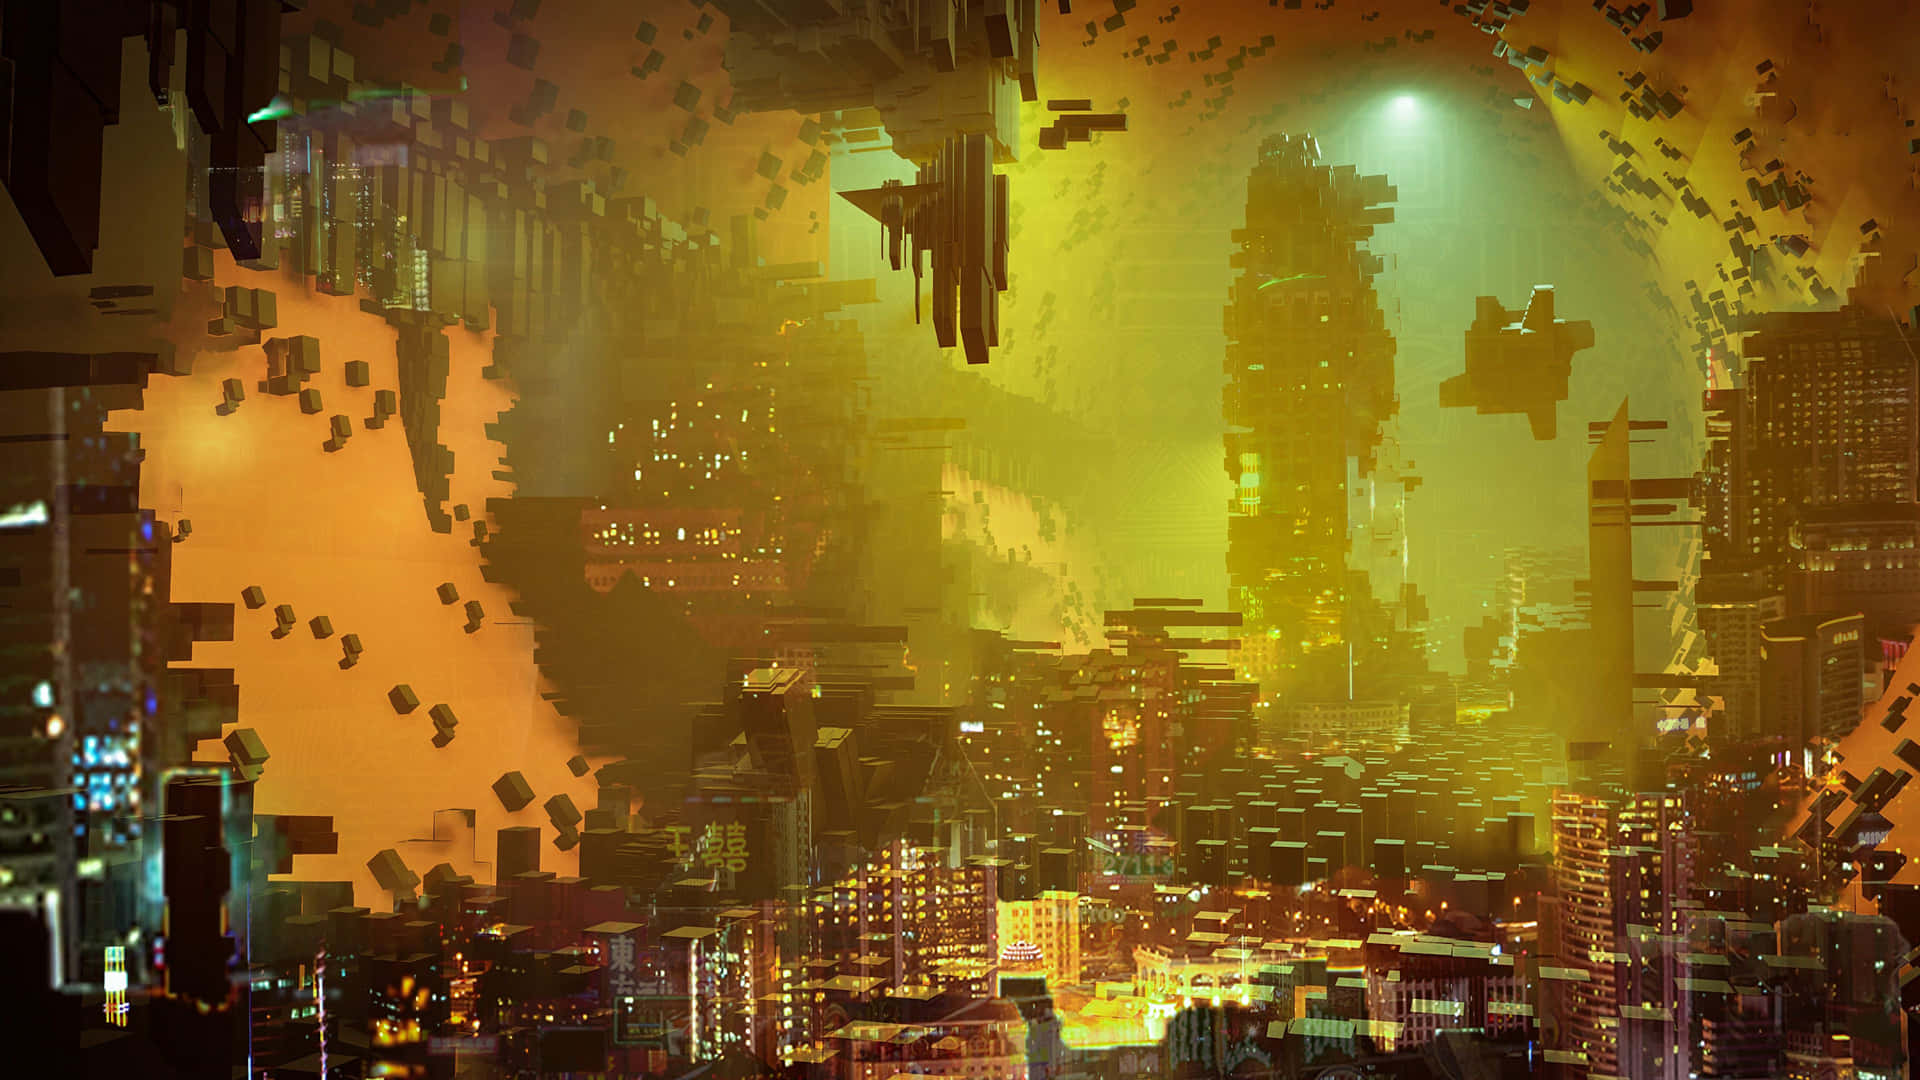 Tag på en tur til den højteknologiske futuristiske by i fremtiden. Wallpaper